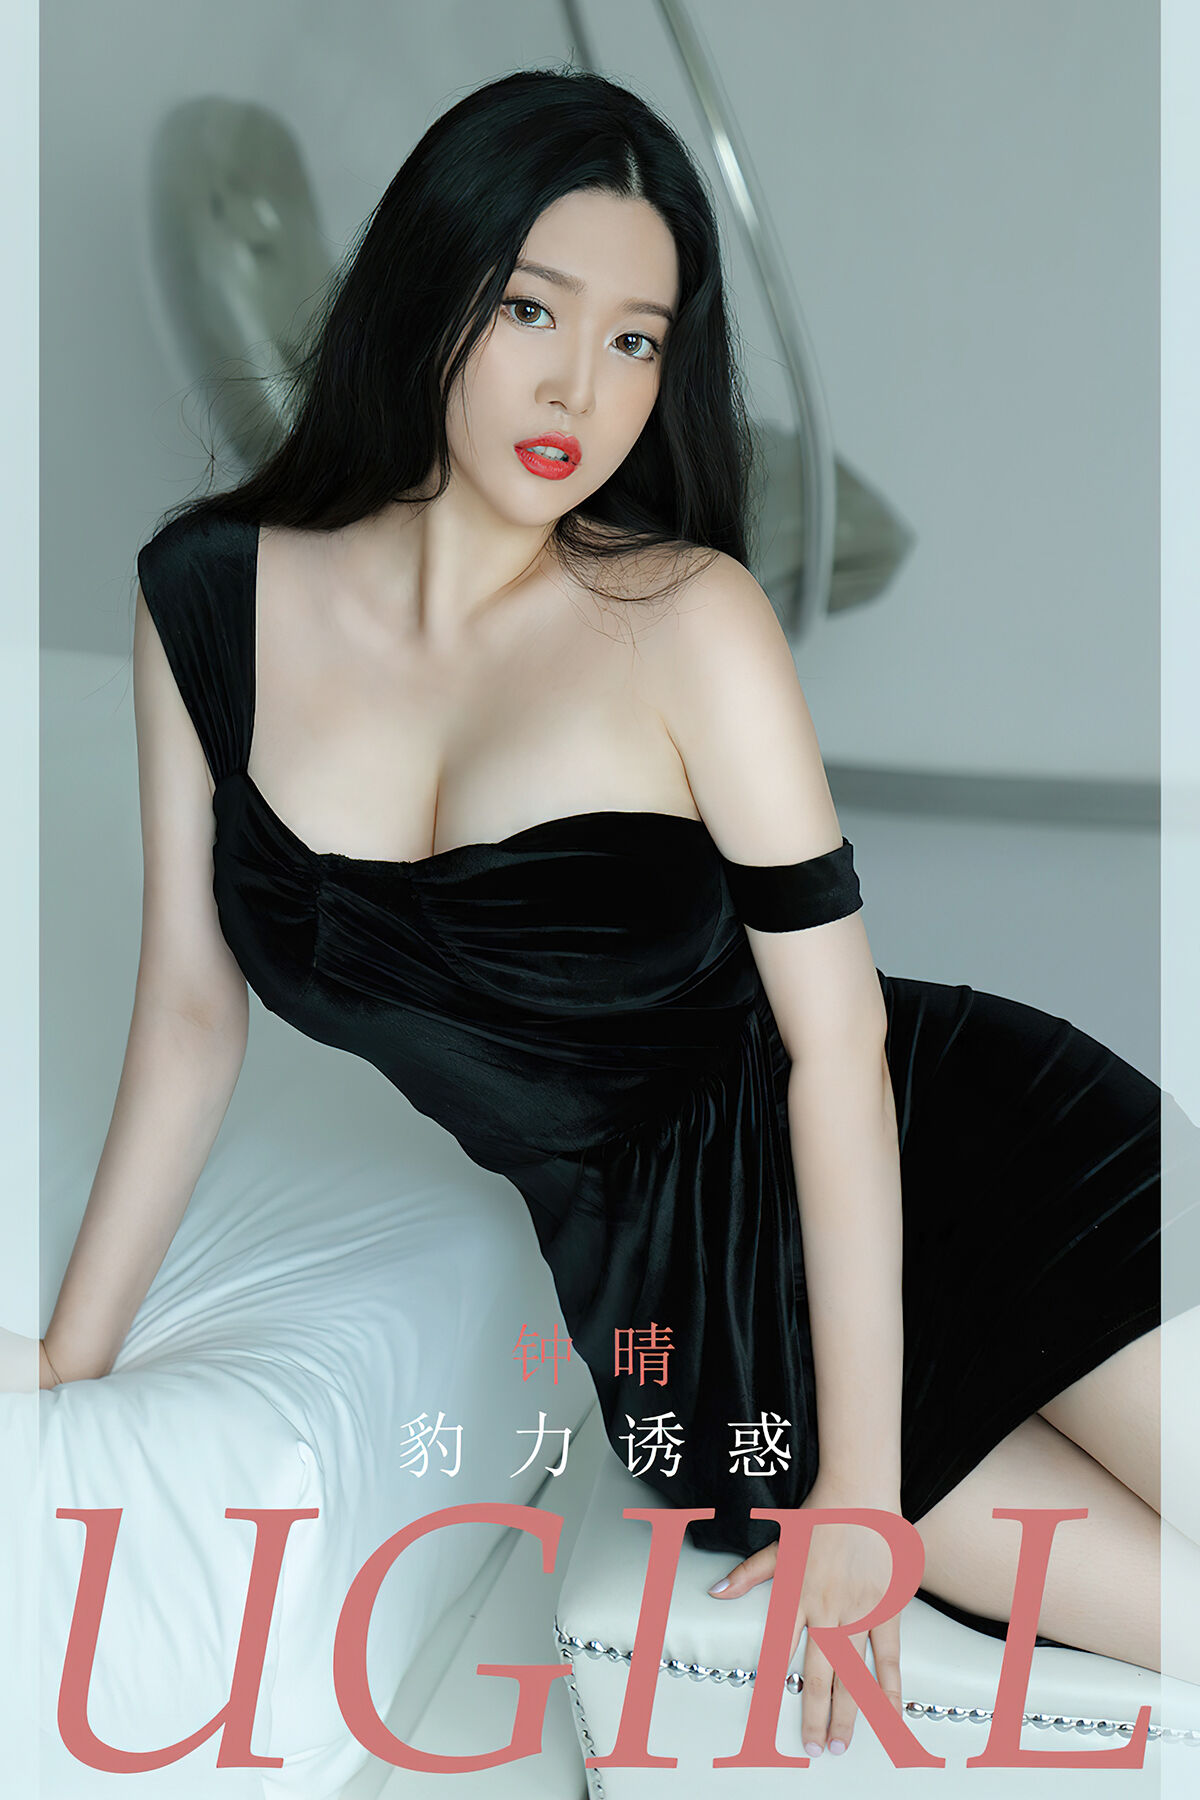 View - Ugirls App NO.2828 Zhong Qing - 